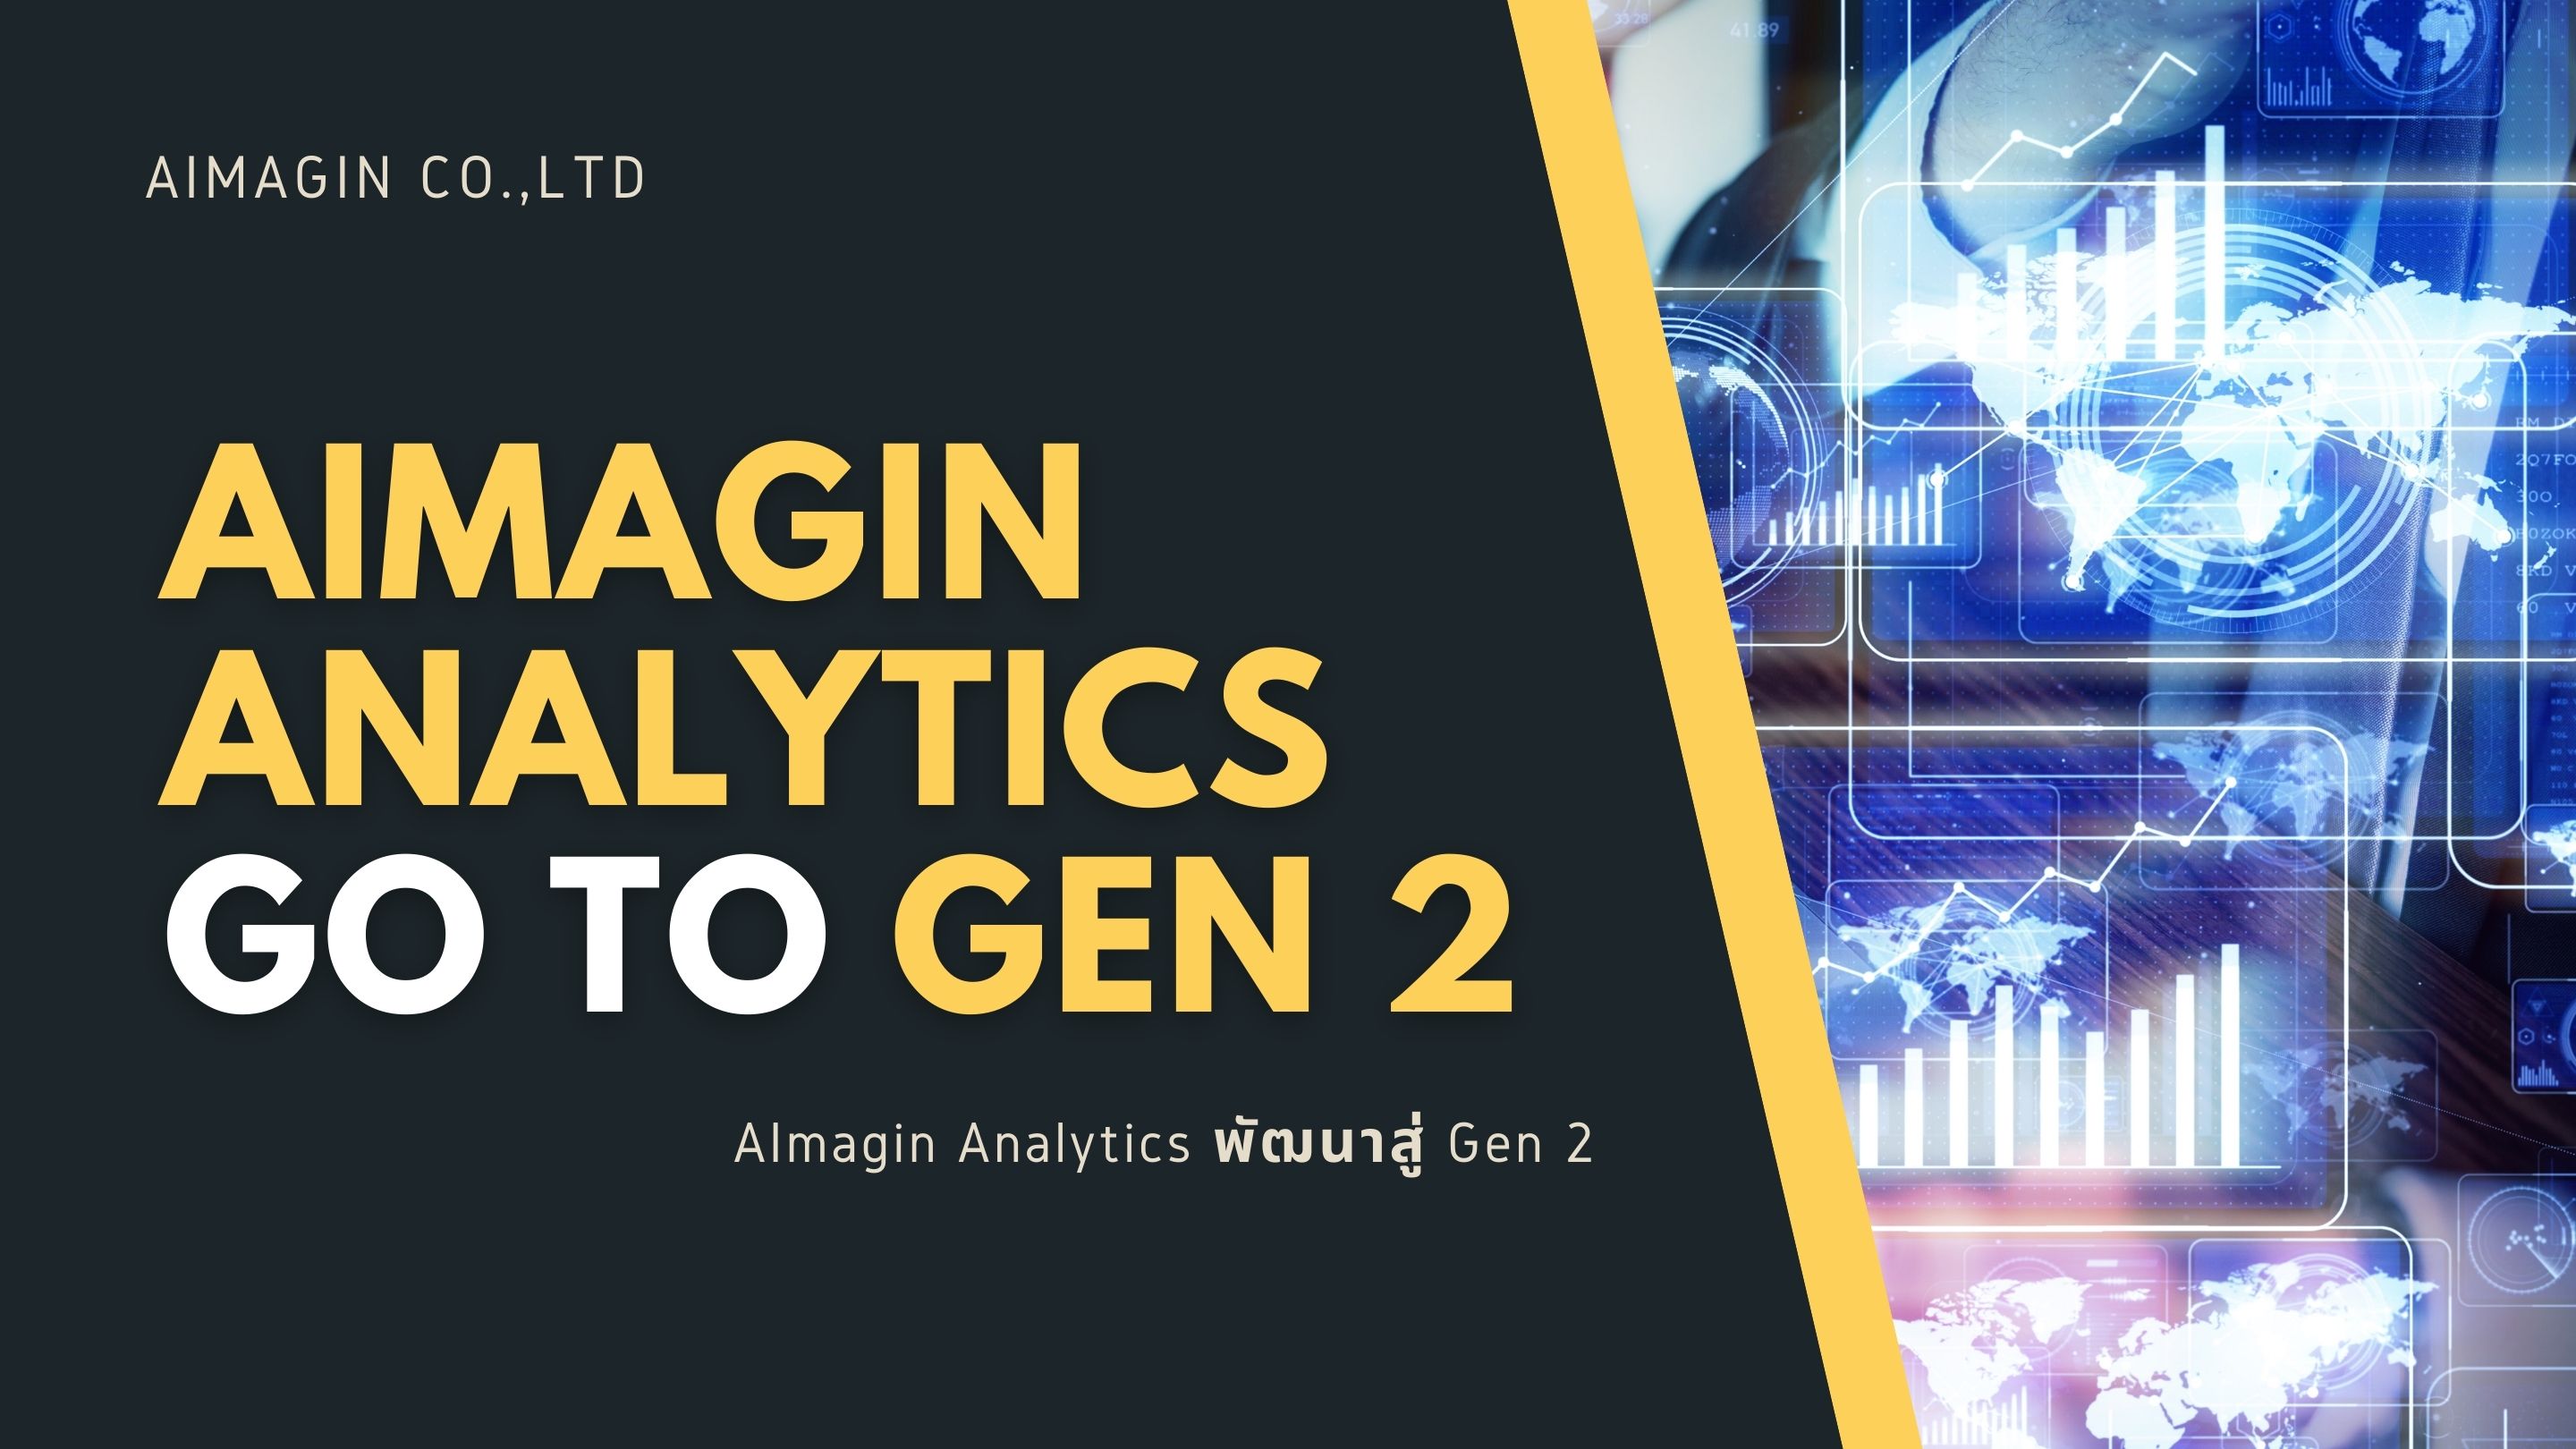 Aimagin Analytics พัฒนาสู่ Gen 2 (Go to Gen 2)